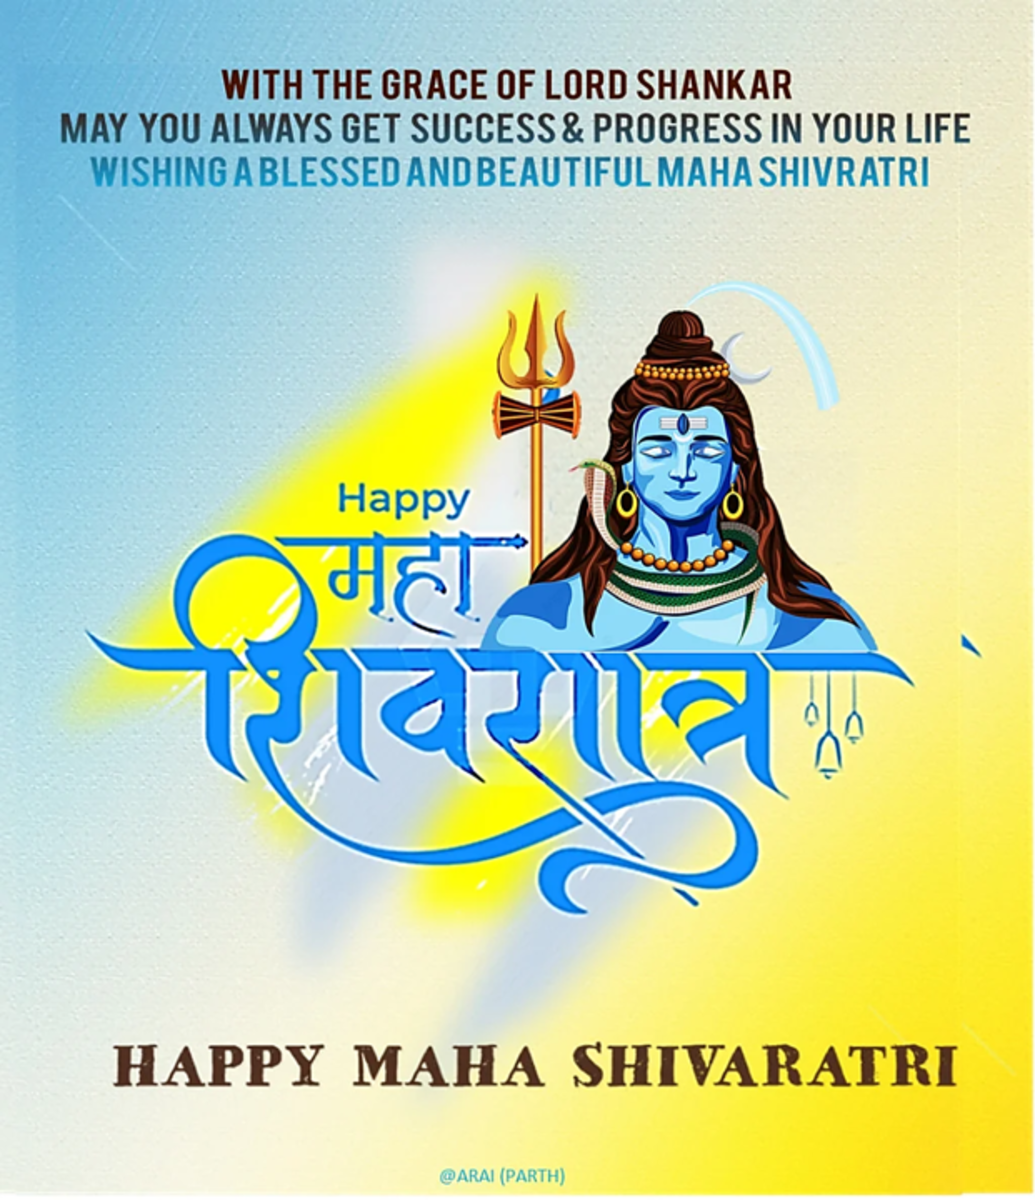 Happy Maha Shivaratri wishes, greetings for employees